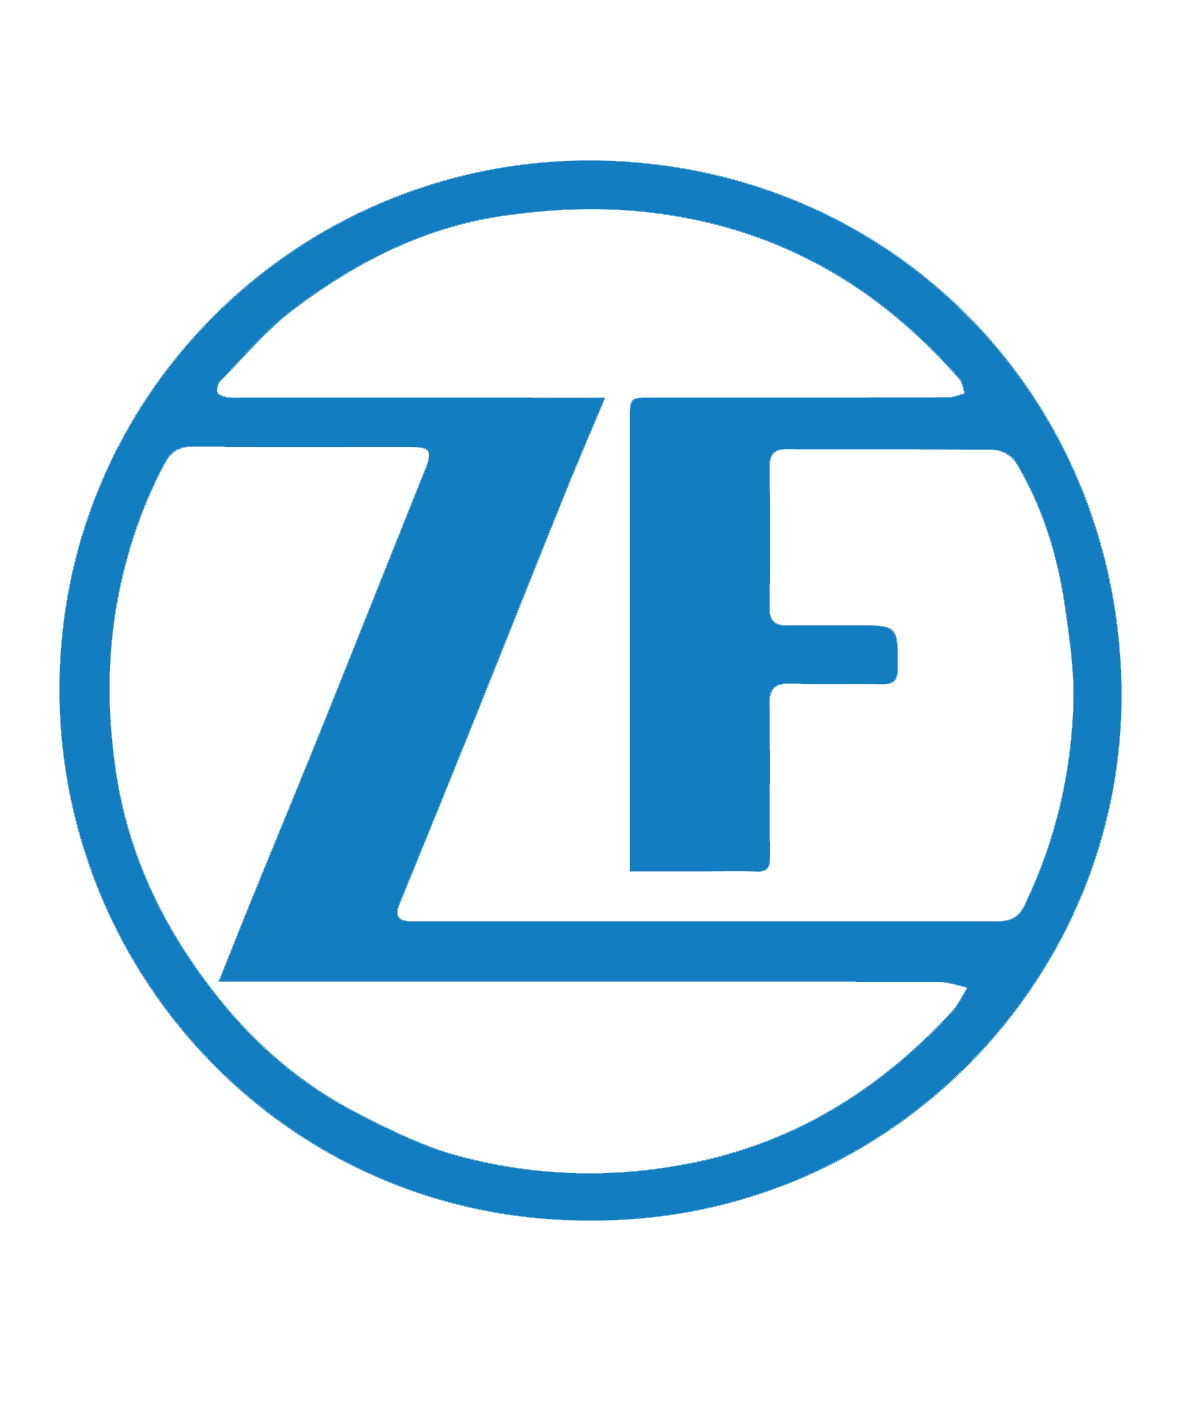 Cabinet Faure Informatique - Partenaire et client : ZF